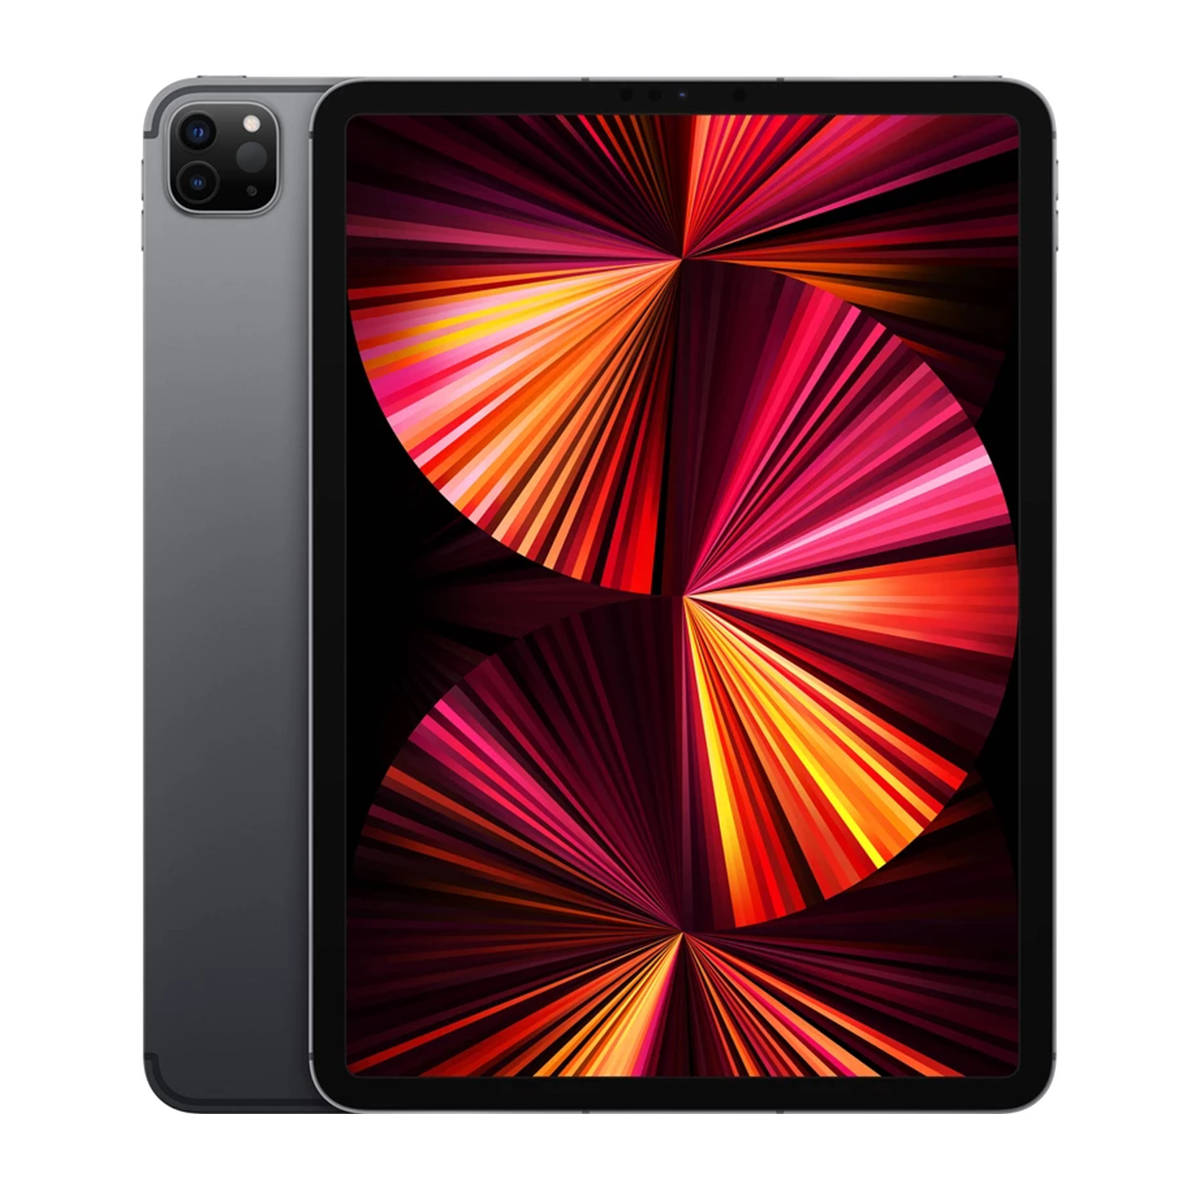 تبلت اپل مدل iPad Pro 11 inch 2021 5G ظرفیت 256 گیگابایت رم 8 گیگابایت 